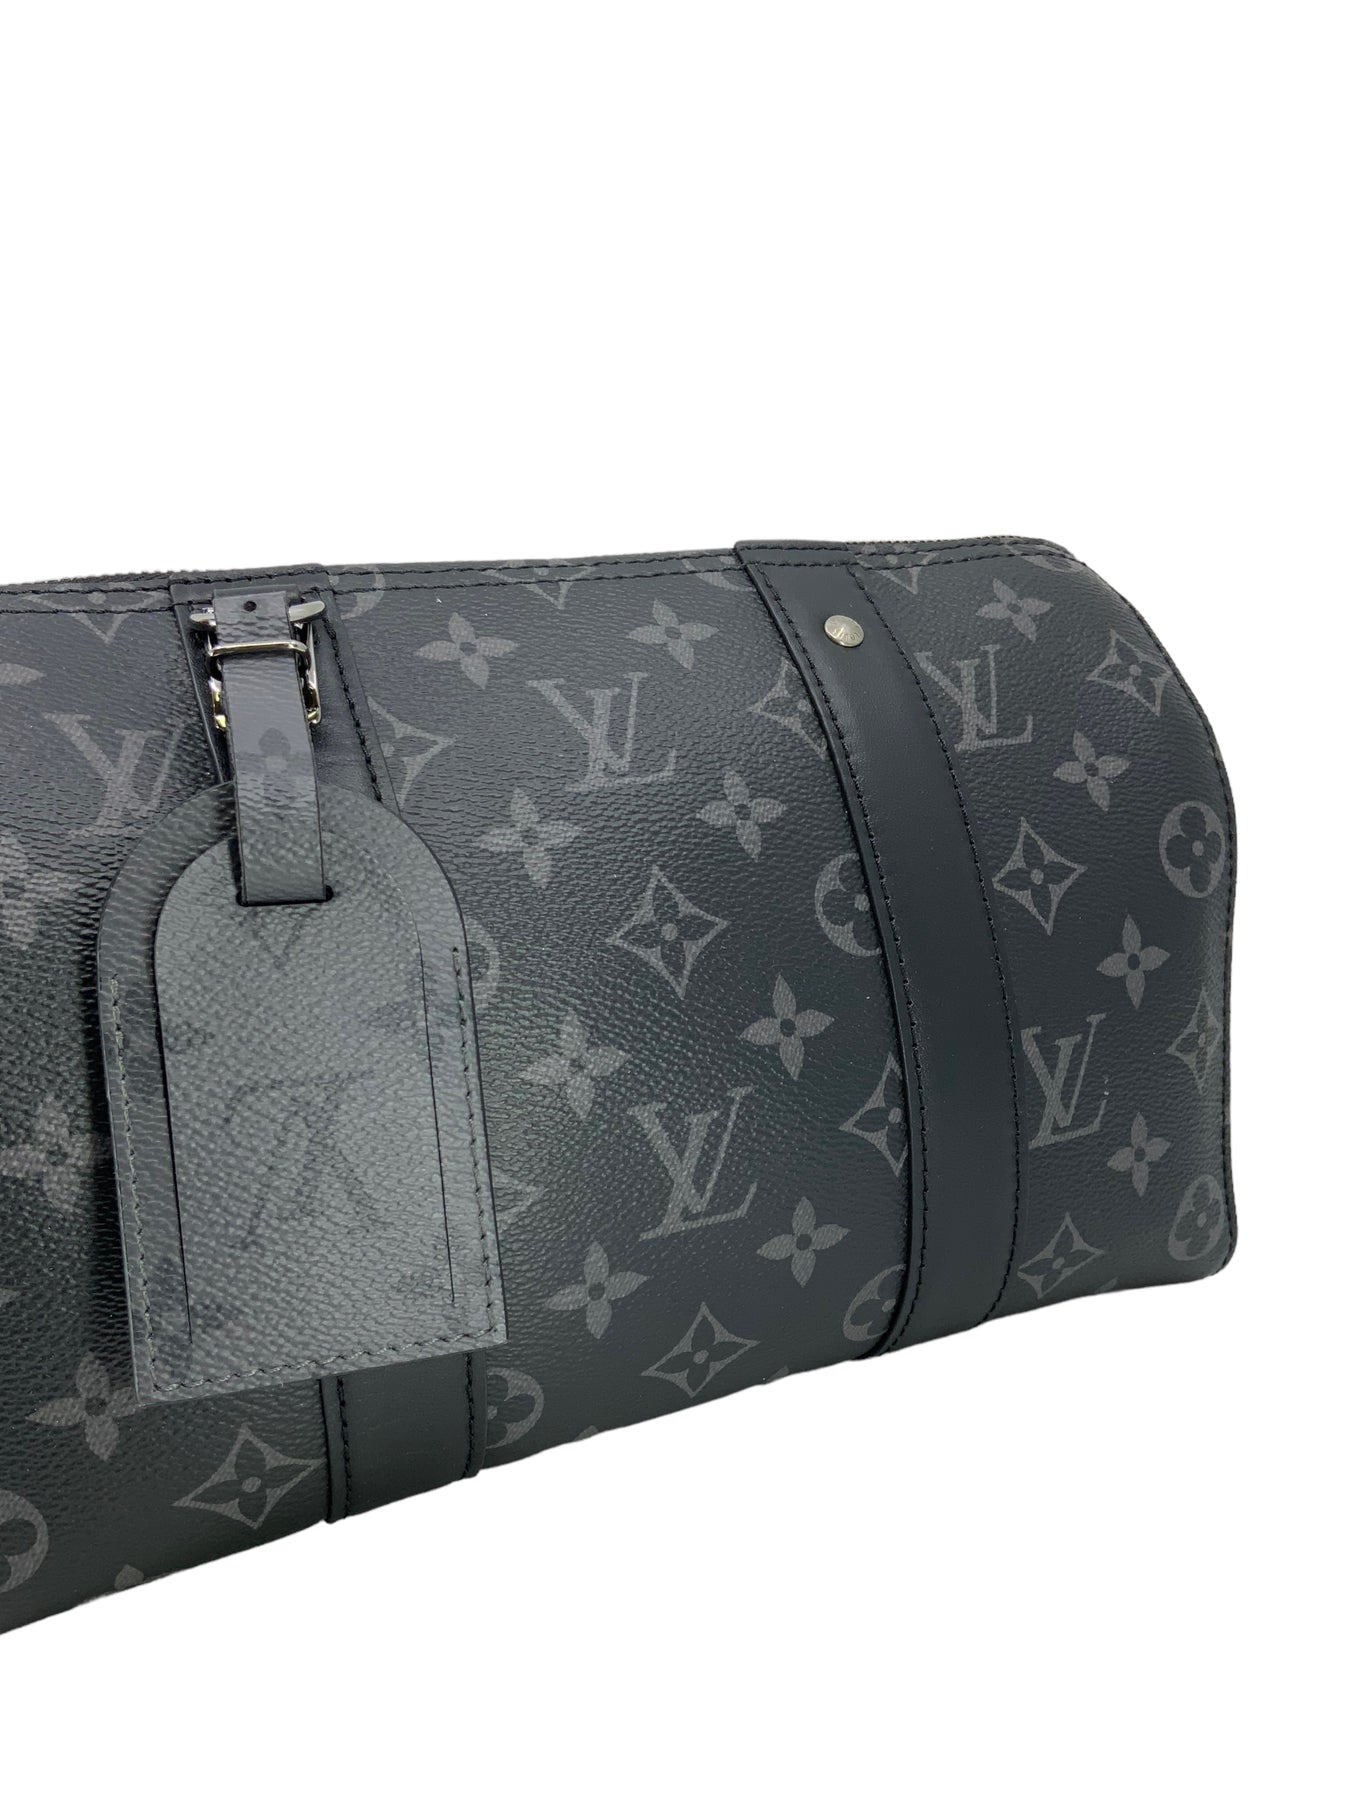 Louis Vuitton City Keepall Bag Monogram Eclipse Canvas Black 2183921